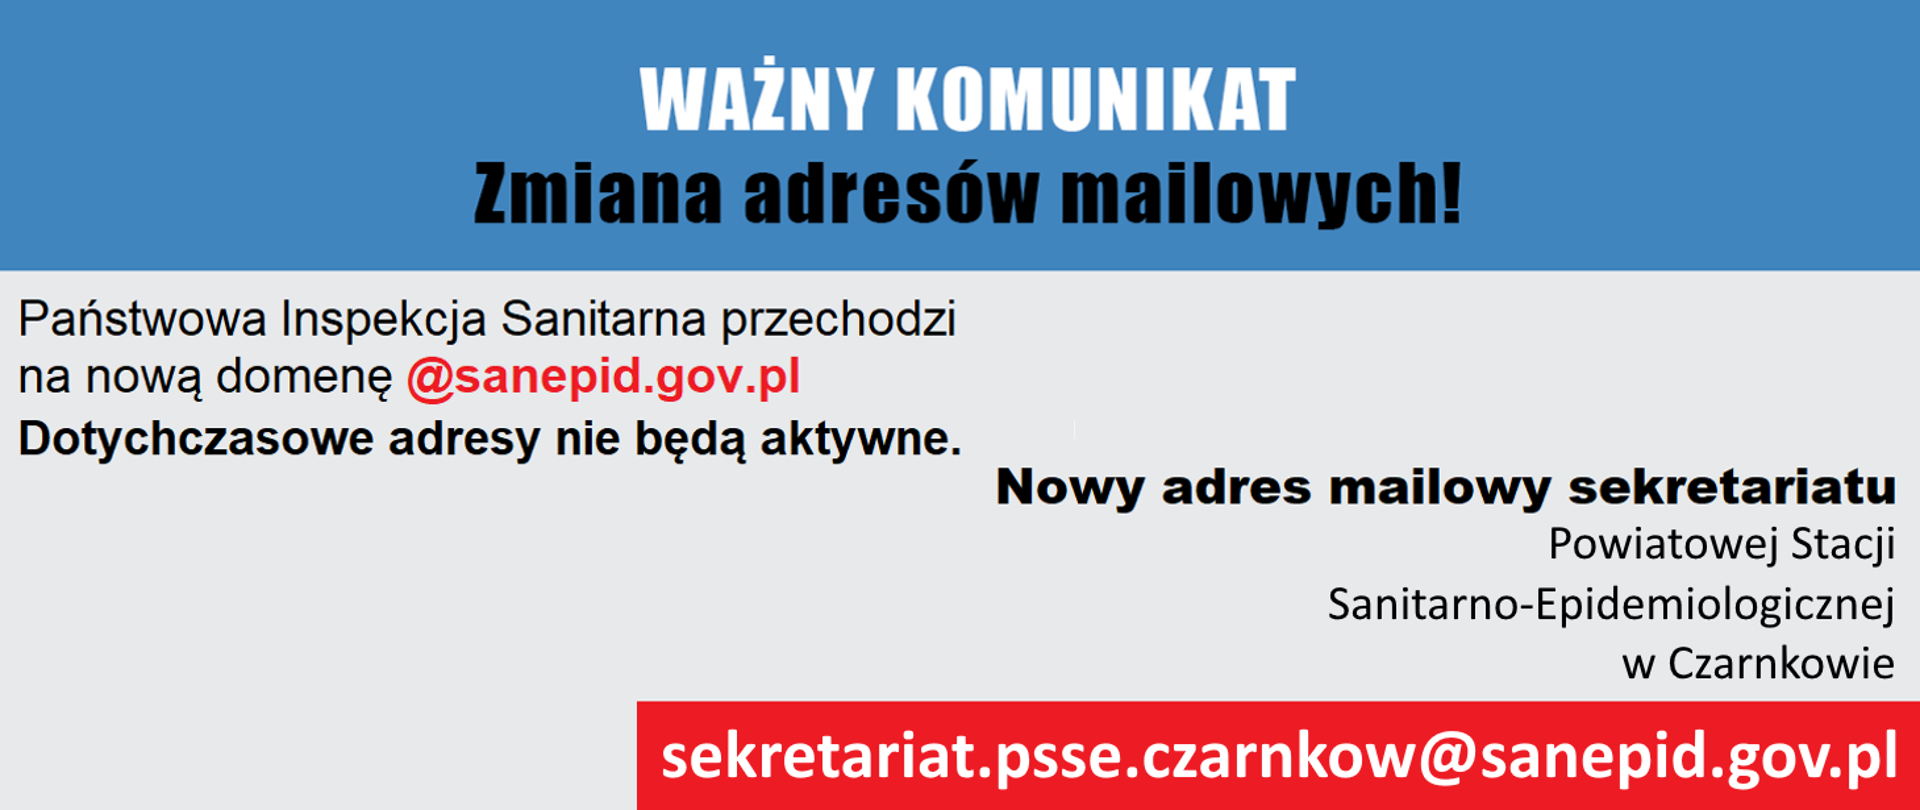 Zmiana adresów mailowych Państwowej Inspekcji Sanitarnej: sekretariat.psse.czarnkow@sanepid.gov.pl